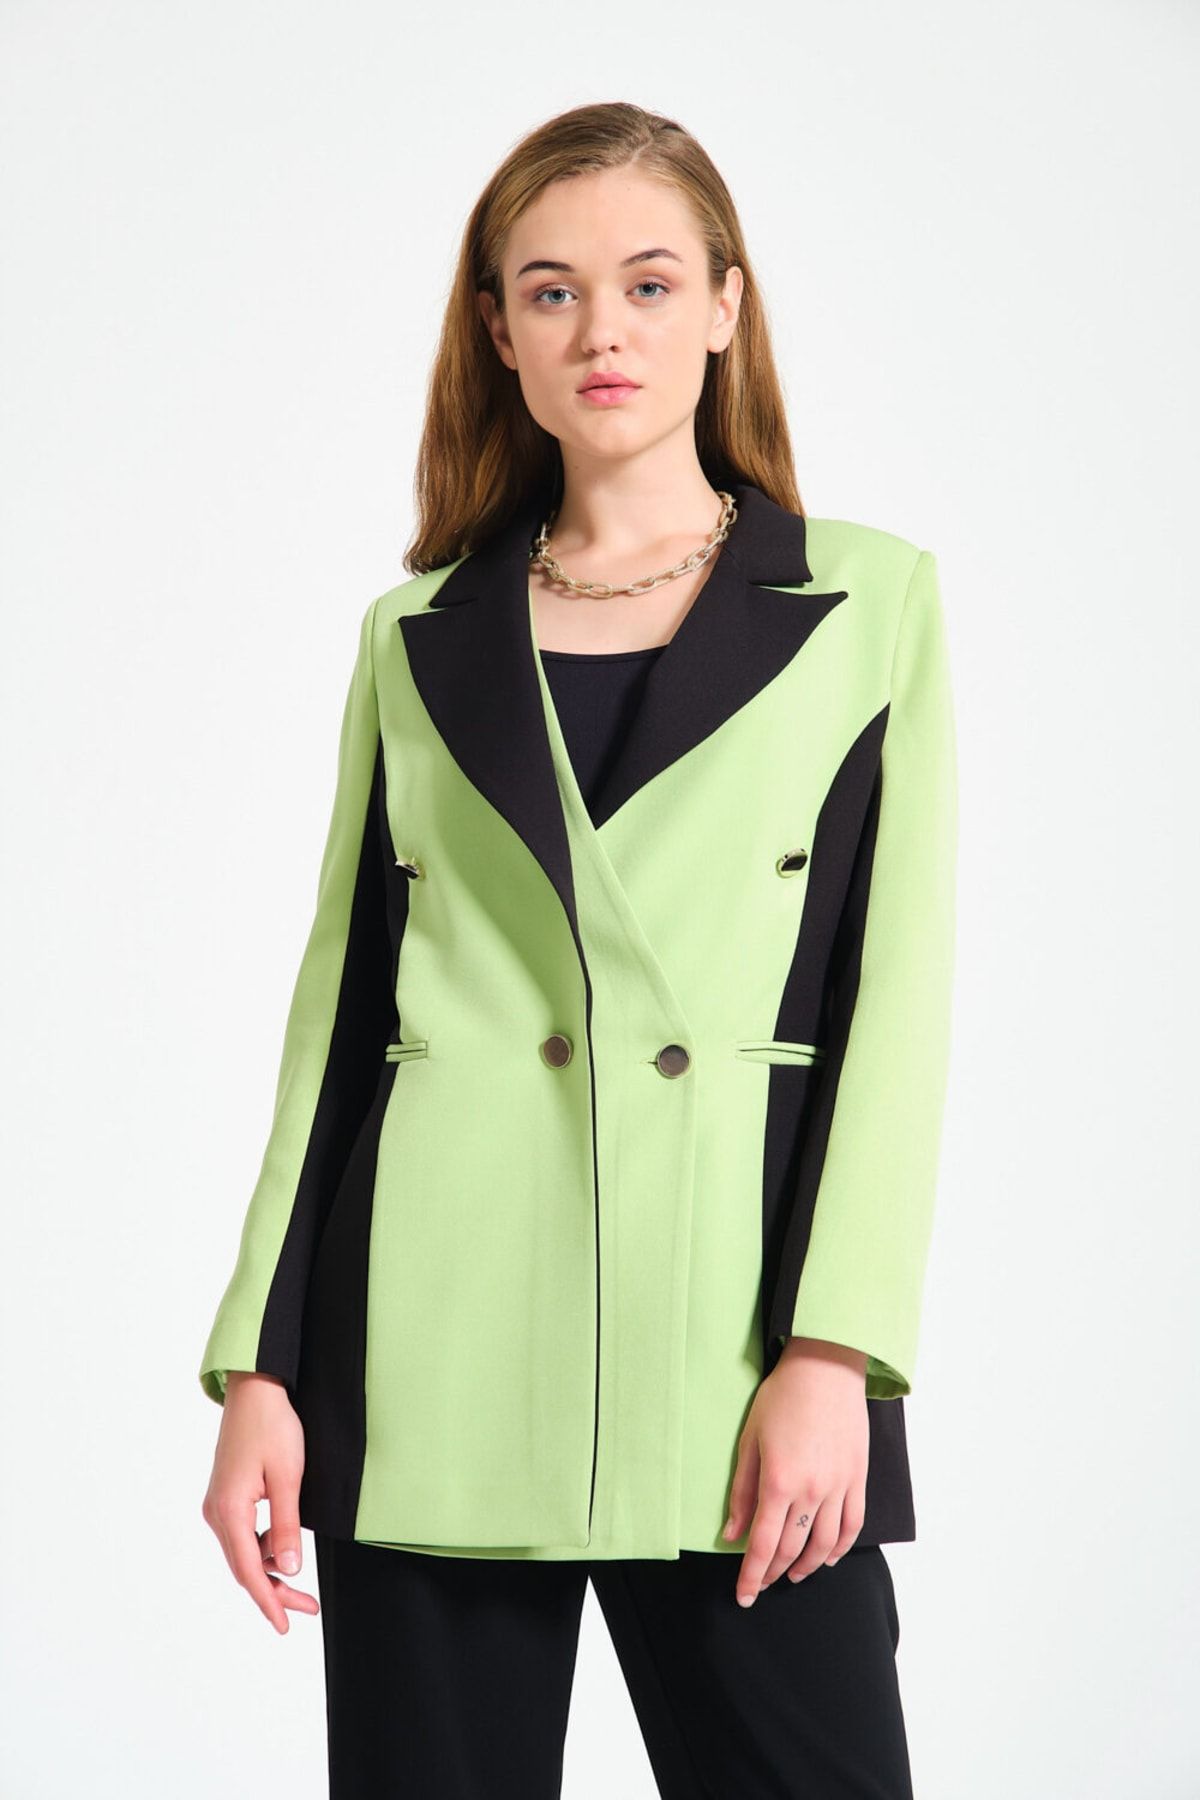 Mizalle Renk Bloklu Fıstık Yeşili Blazer Ceket